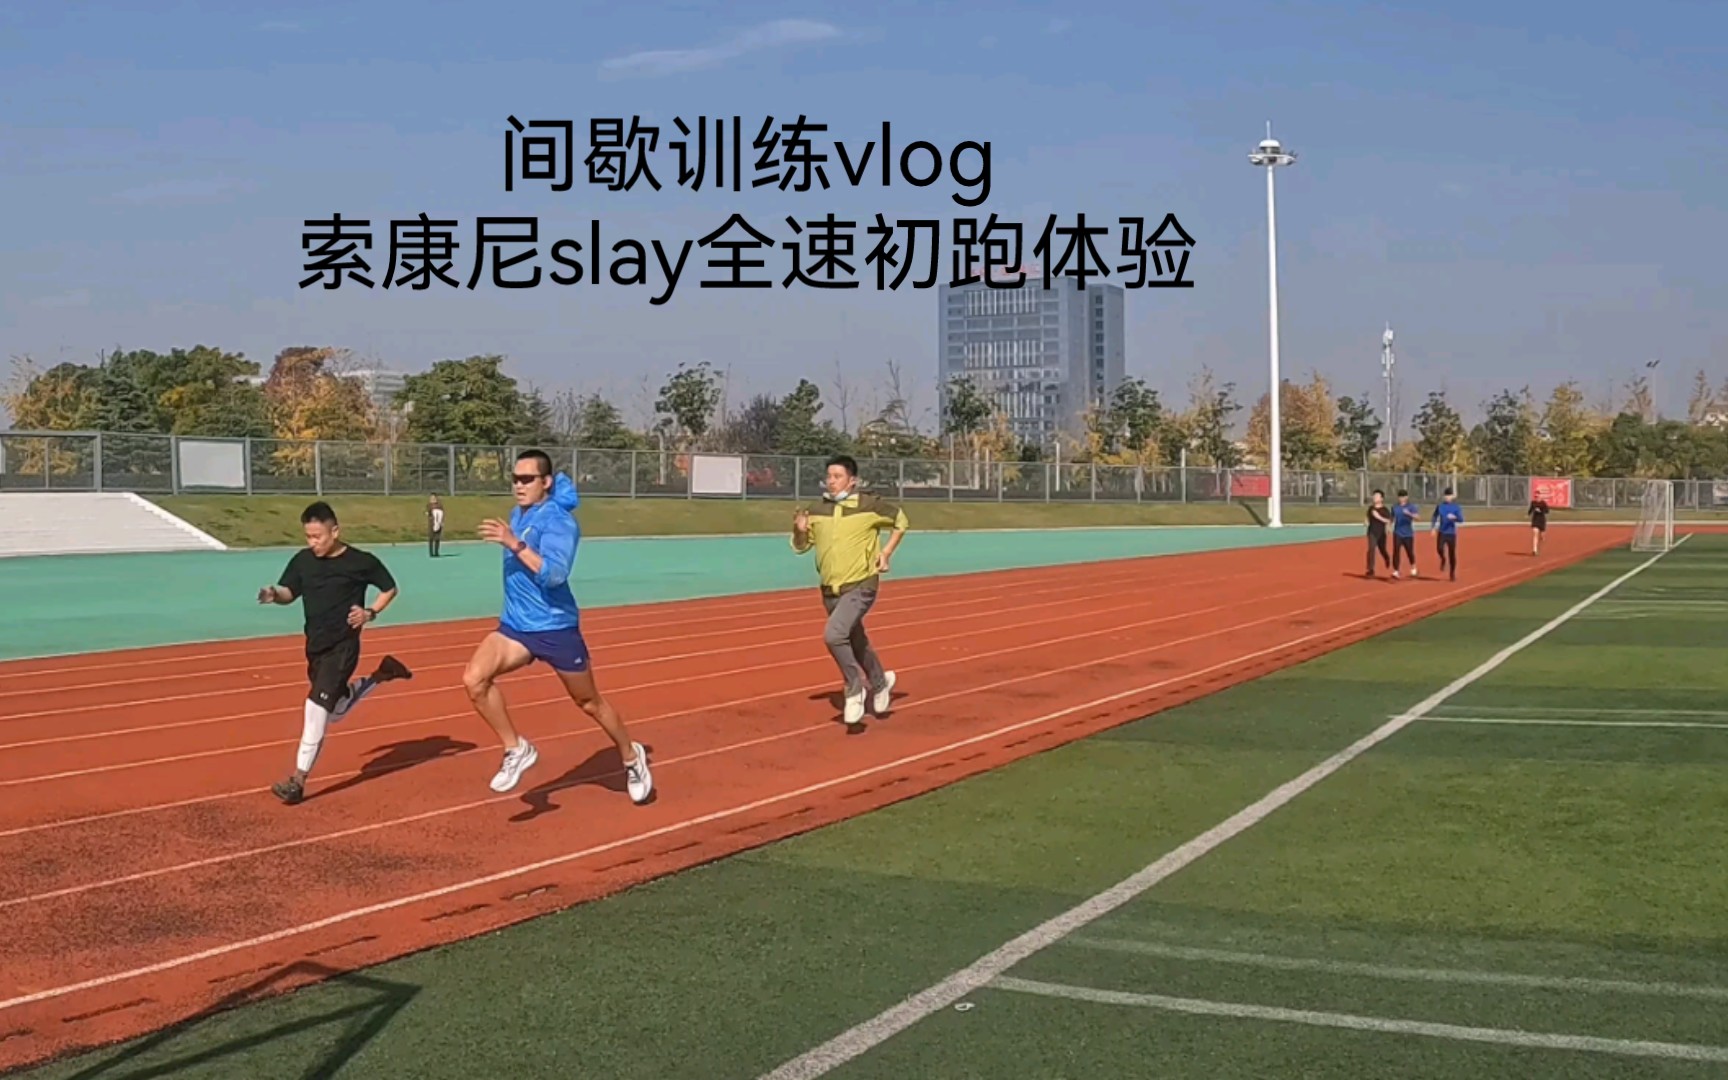 22.11.16，跑步小团伙间歇训练vlog；索康尼slay全速，初跑感受。